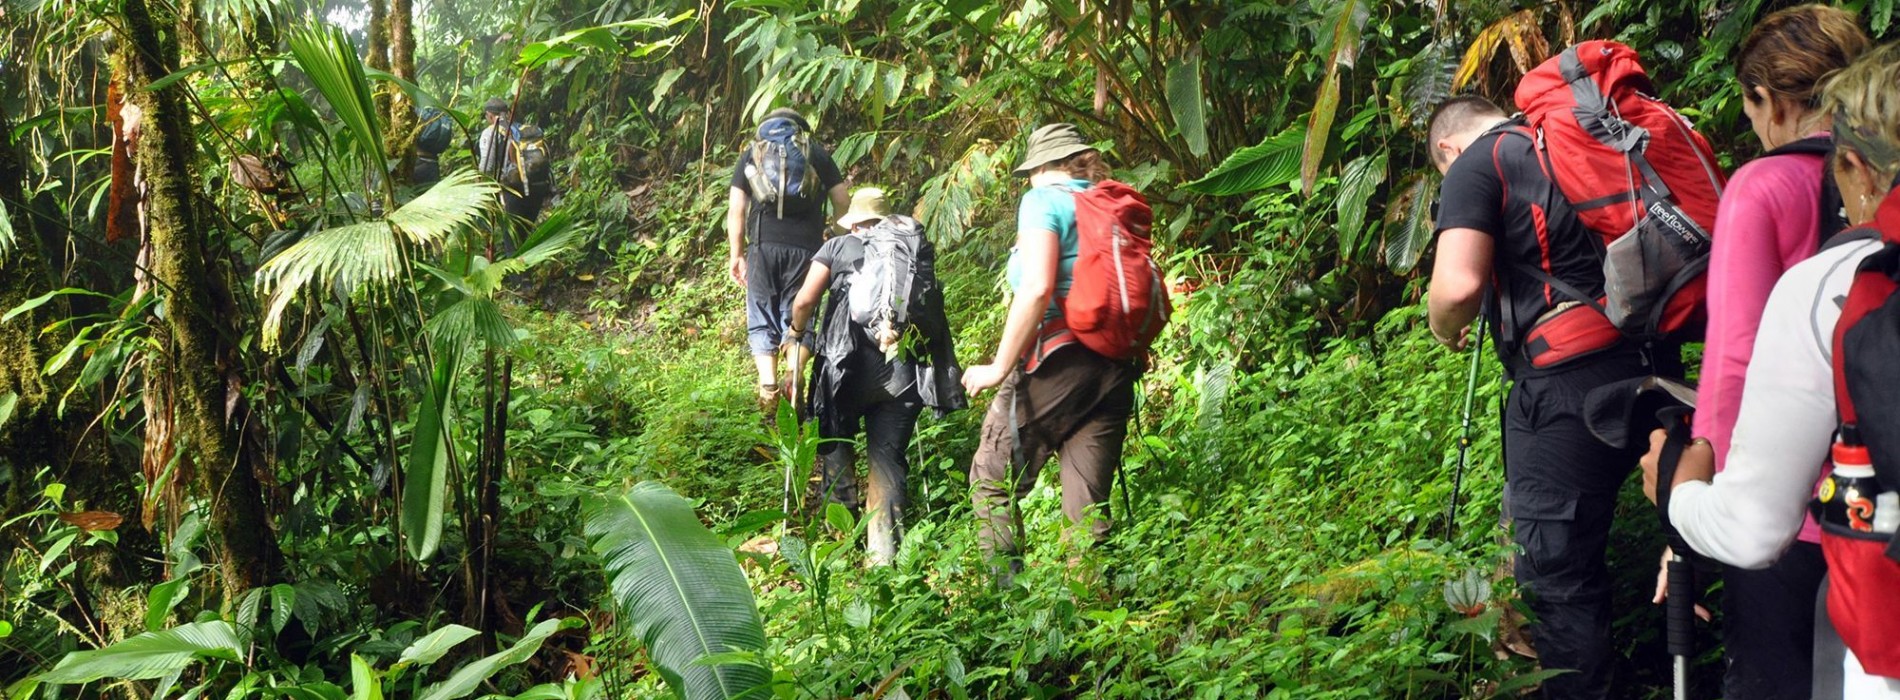 Jungle trekking in Costa Rica